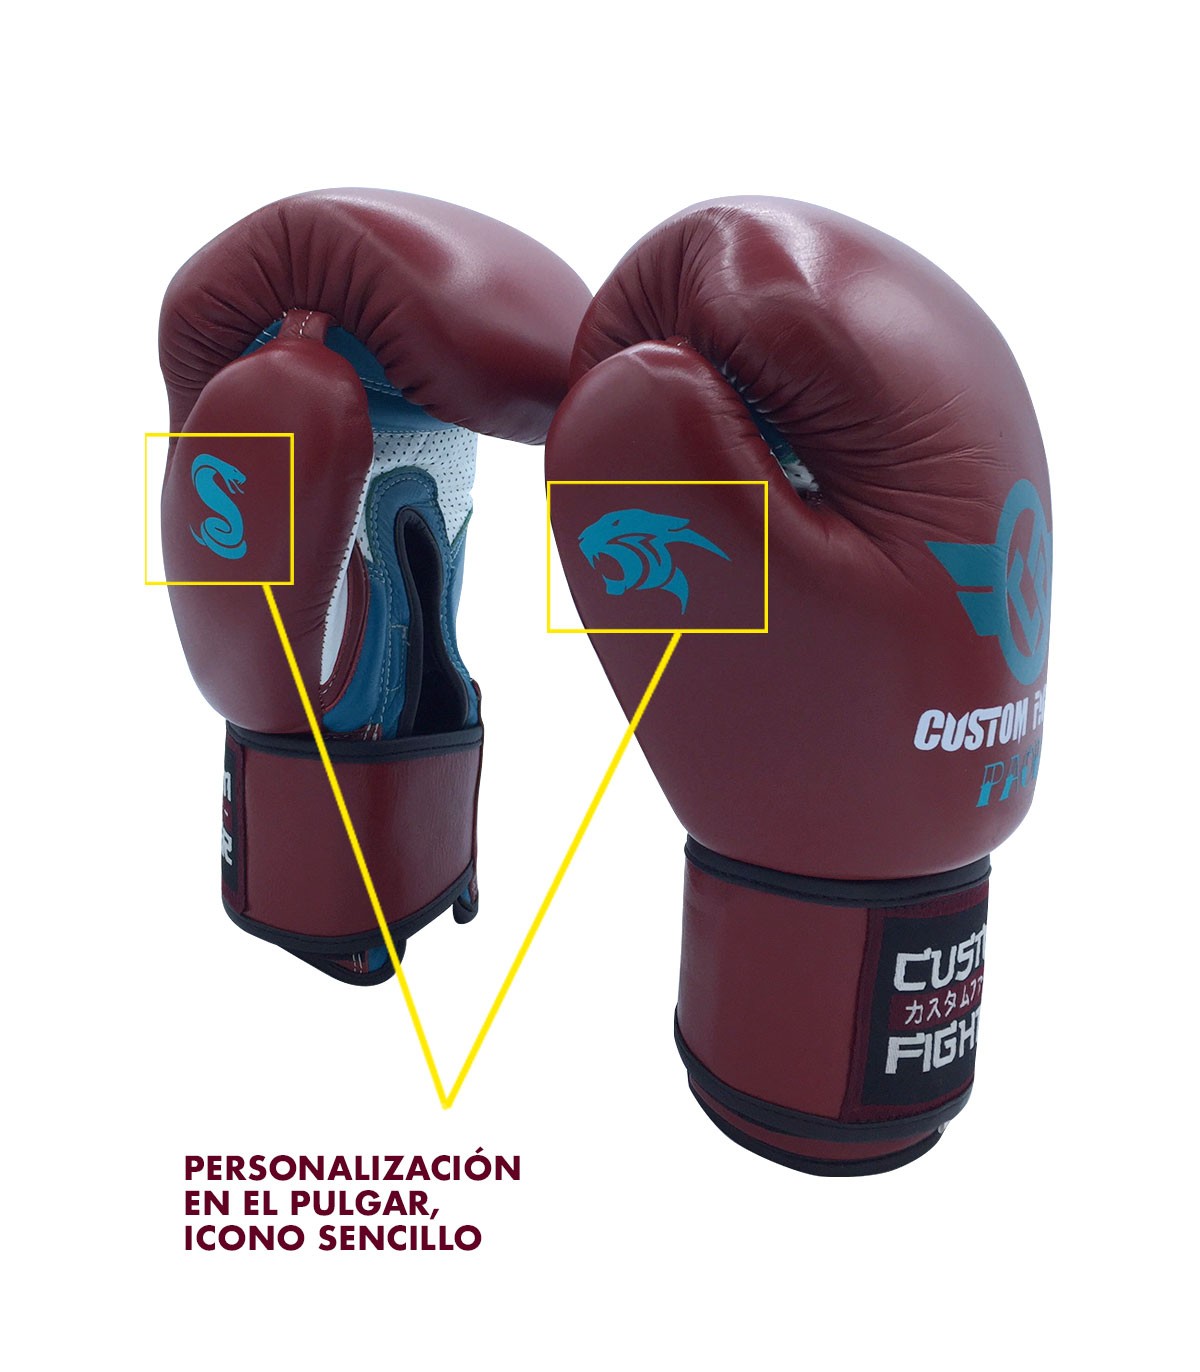 Personalización de guantes de Boxeo - Custom Fighter